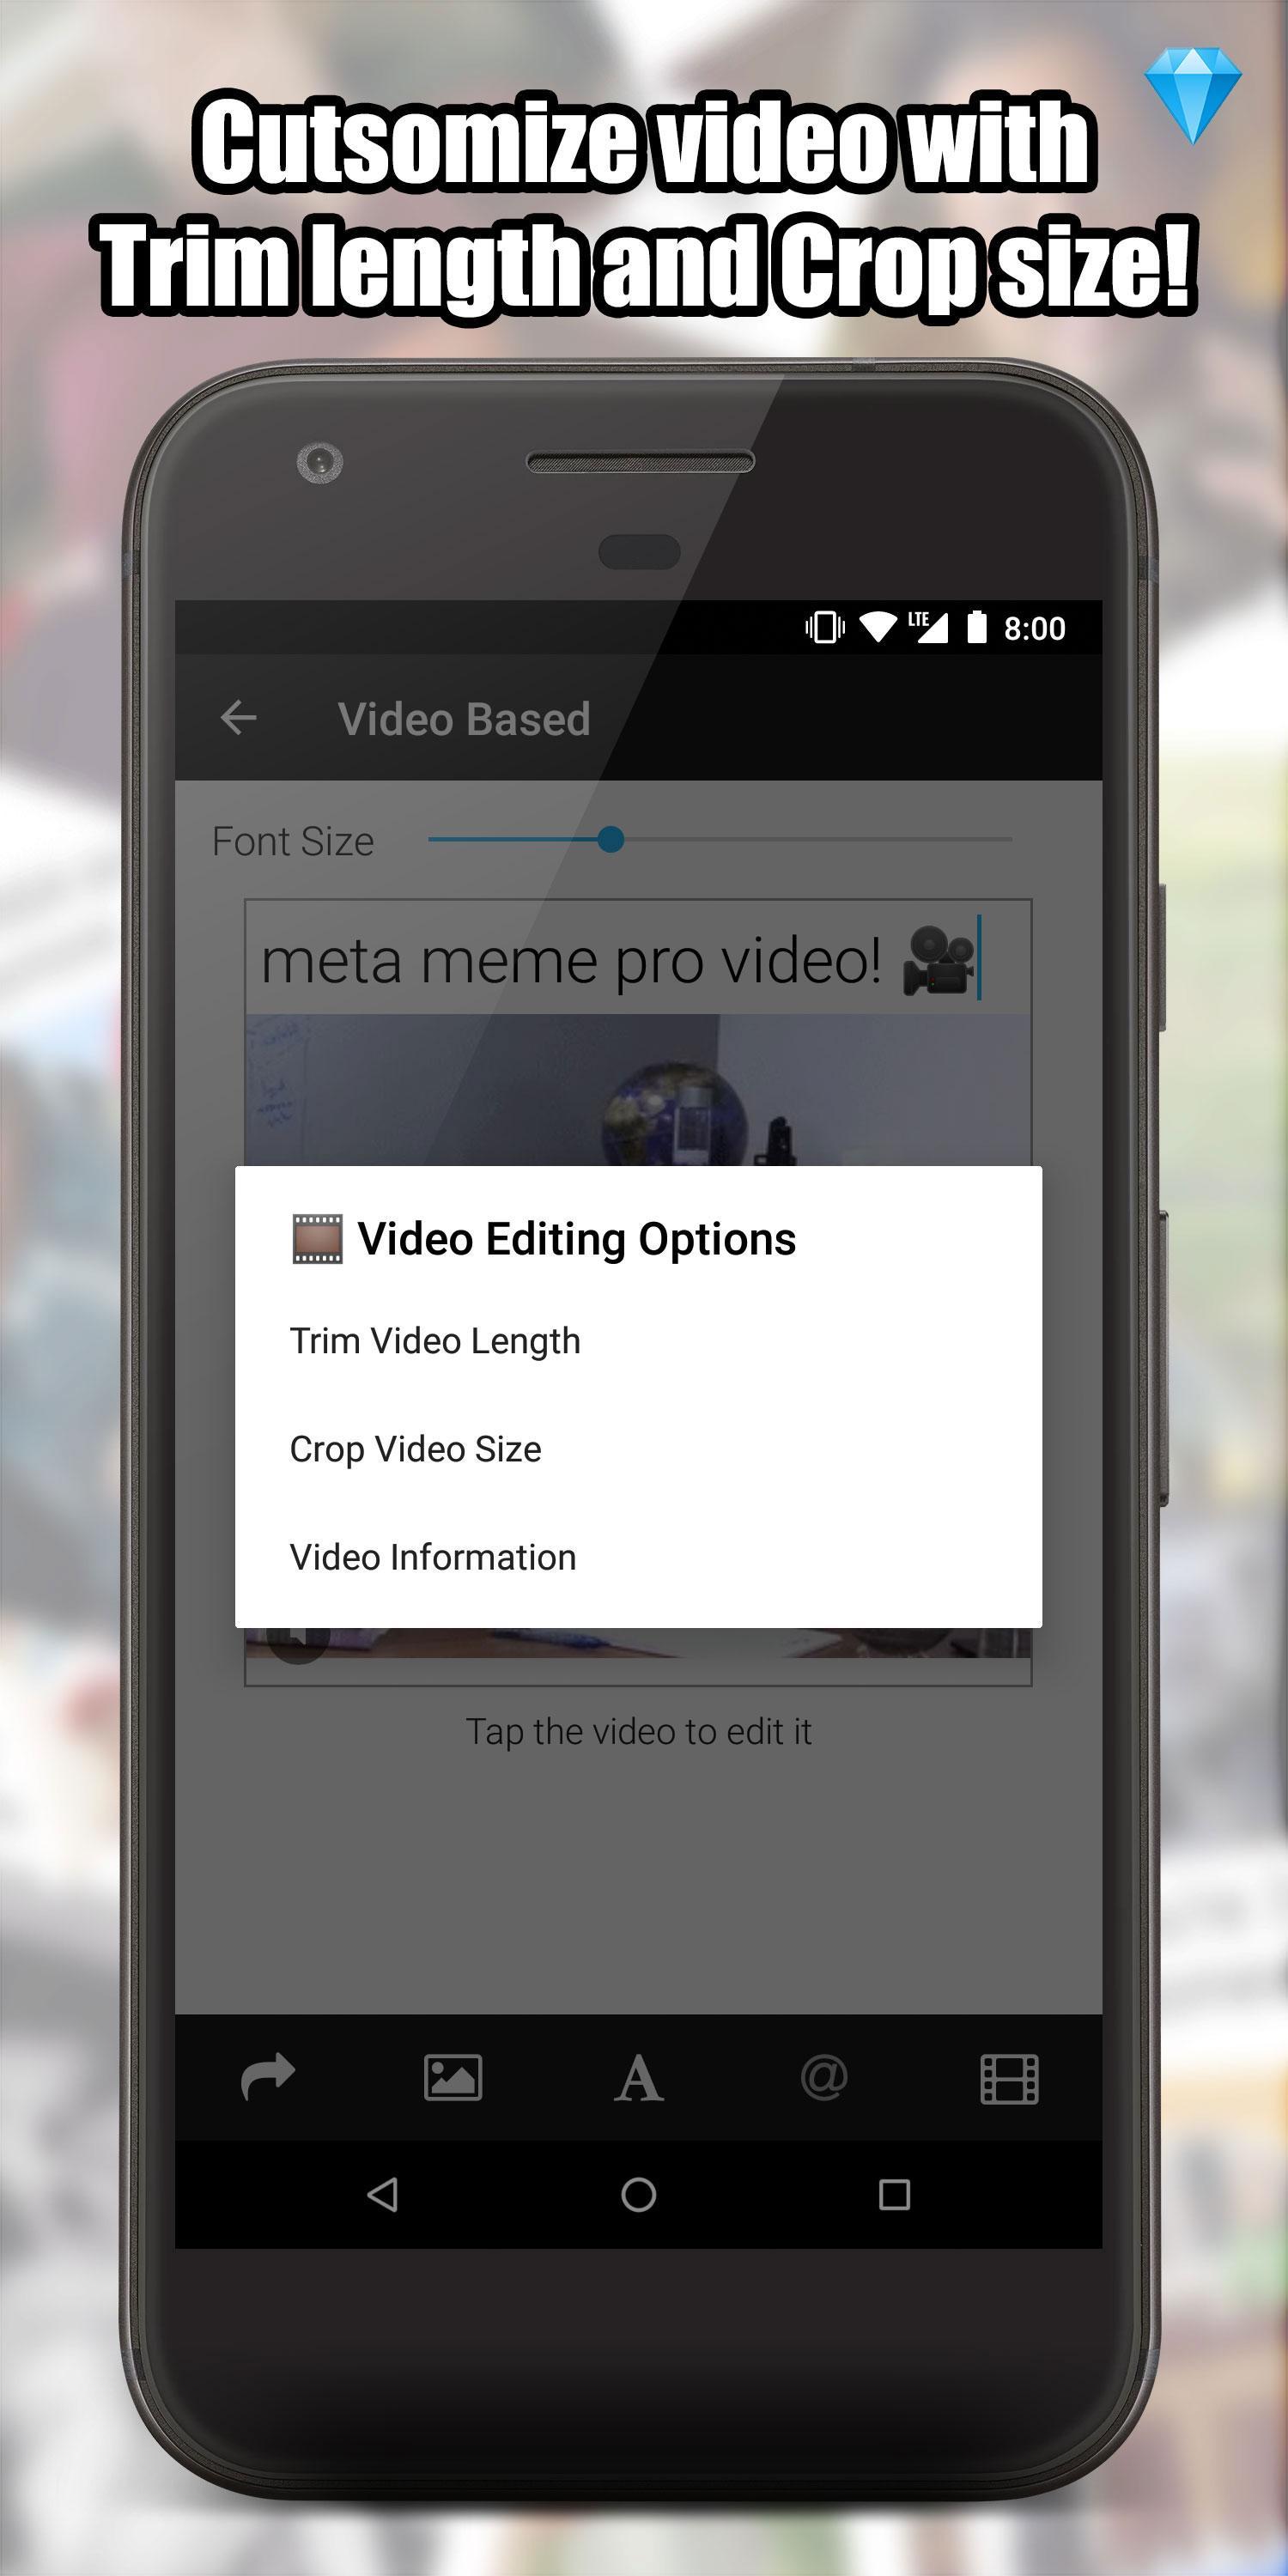 How To Make A Meme Image And Video - Meta Meme App